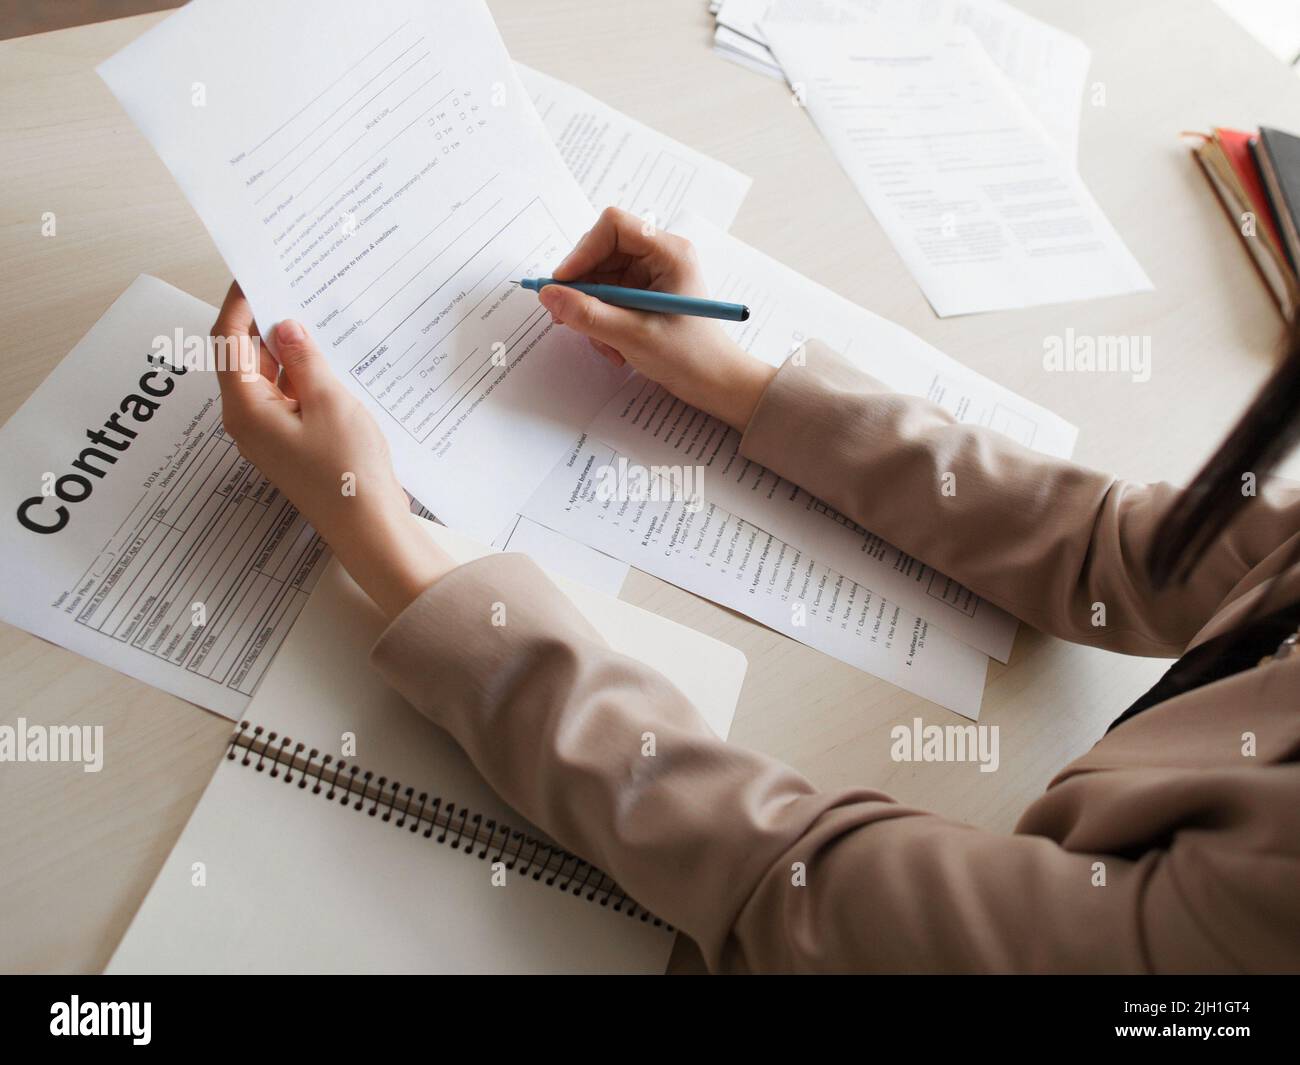 Frau, die einen Arbeitsvertrag unterzeichnet. Nahaufnahme der weiblichen Hände mit Stift, die das Dokument halten. Arbeit, Job, Beruf, Beruf, Rekrutierungskonzept Stockfoto